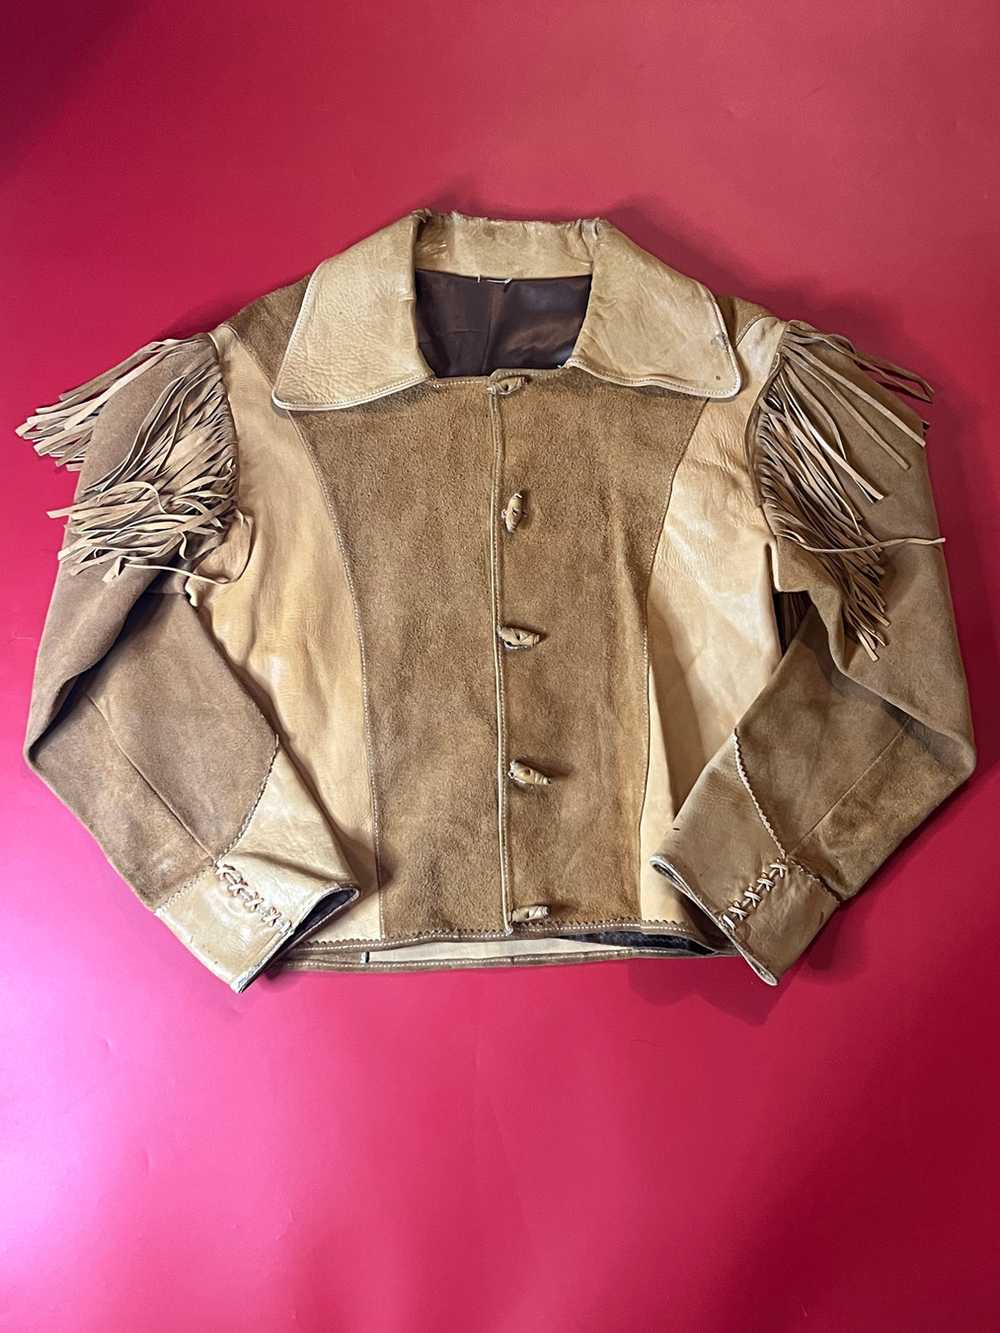 70’s Fringed Leather Jacket - image 1